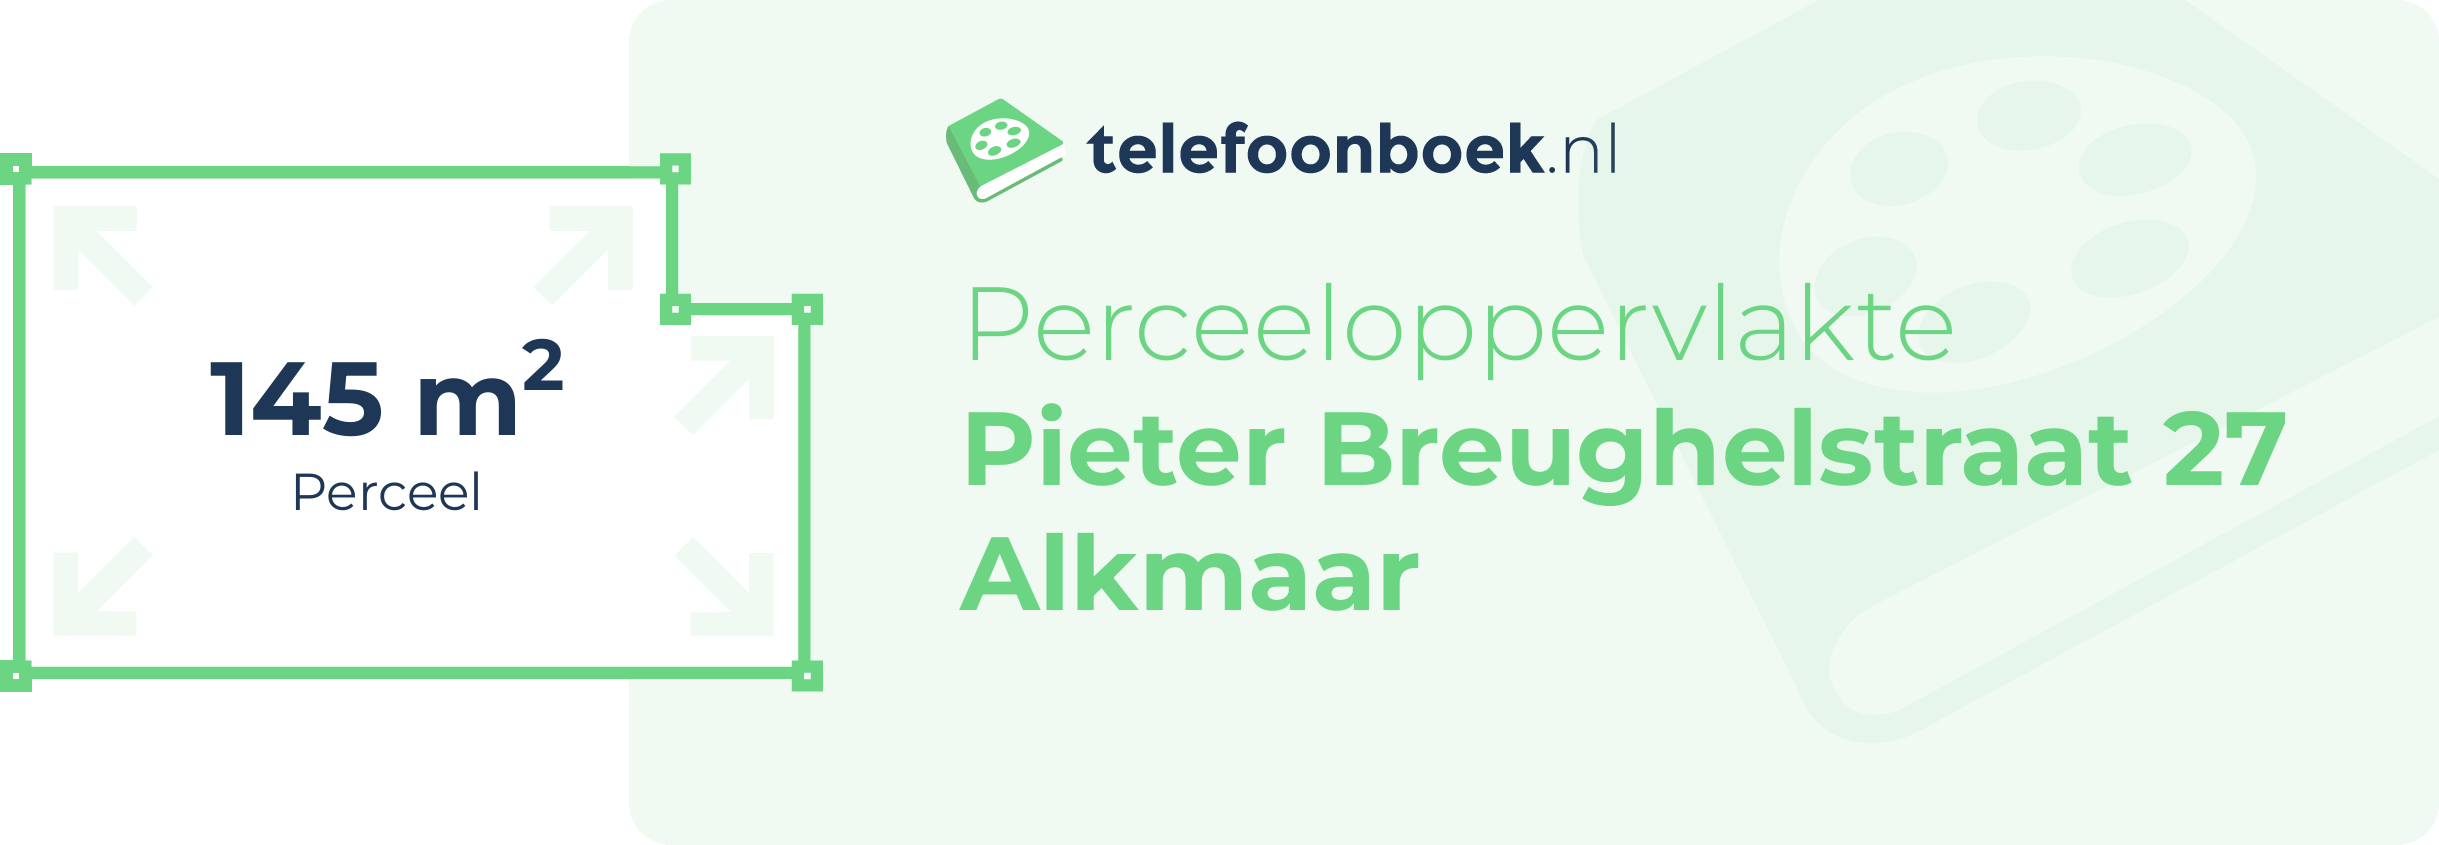 Perceeloppervlakte Pieter Breughelstraat 27 Alkmaar